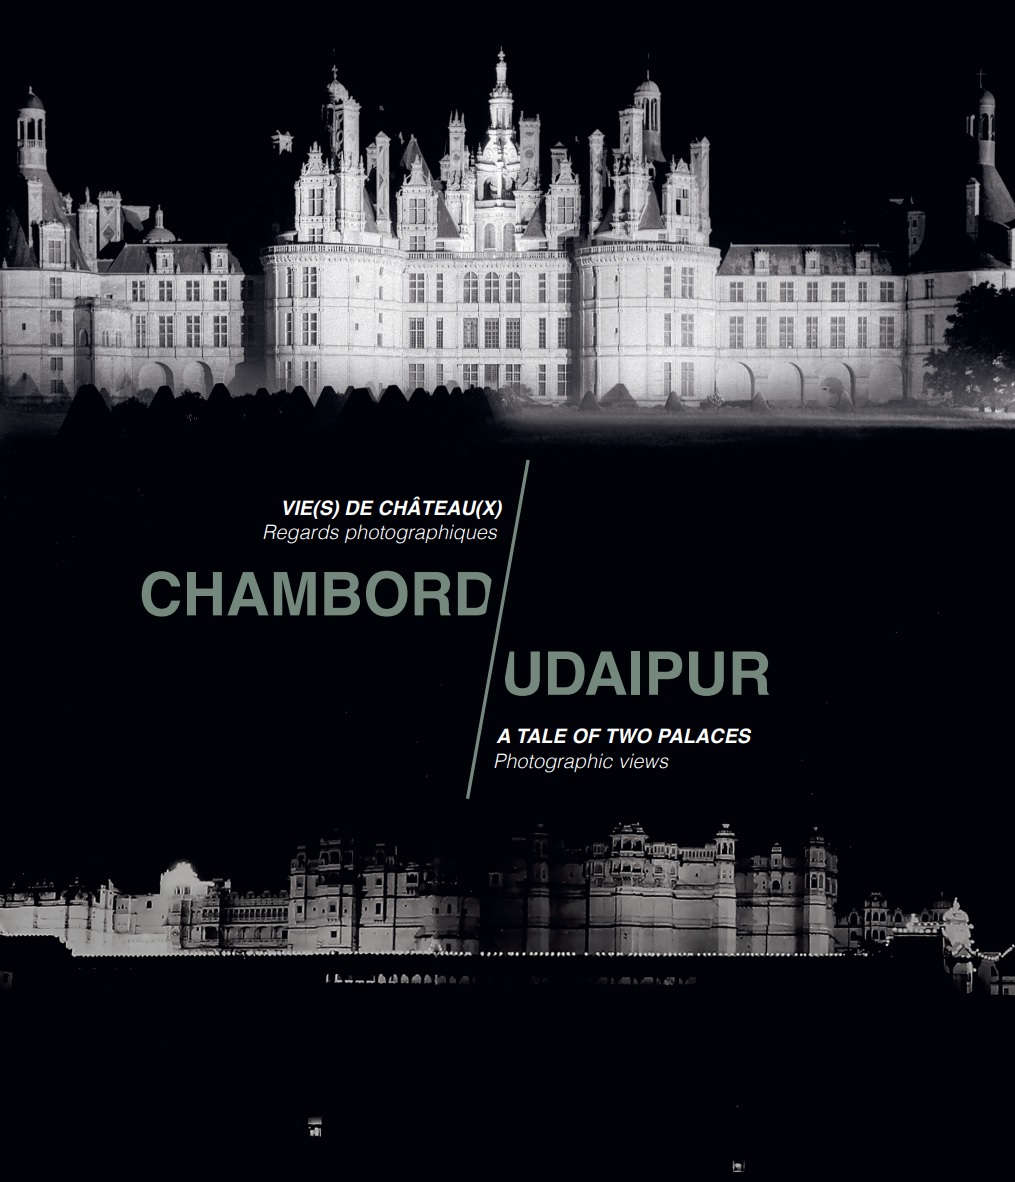 Exposition vie(s) de château(x) - catalogue exposition - château de Chambord